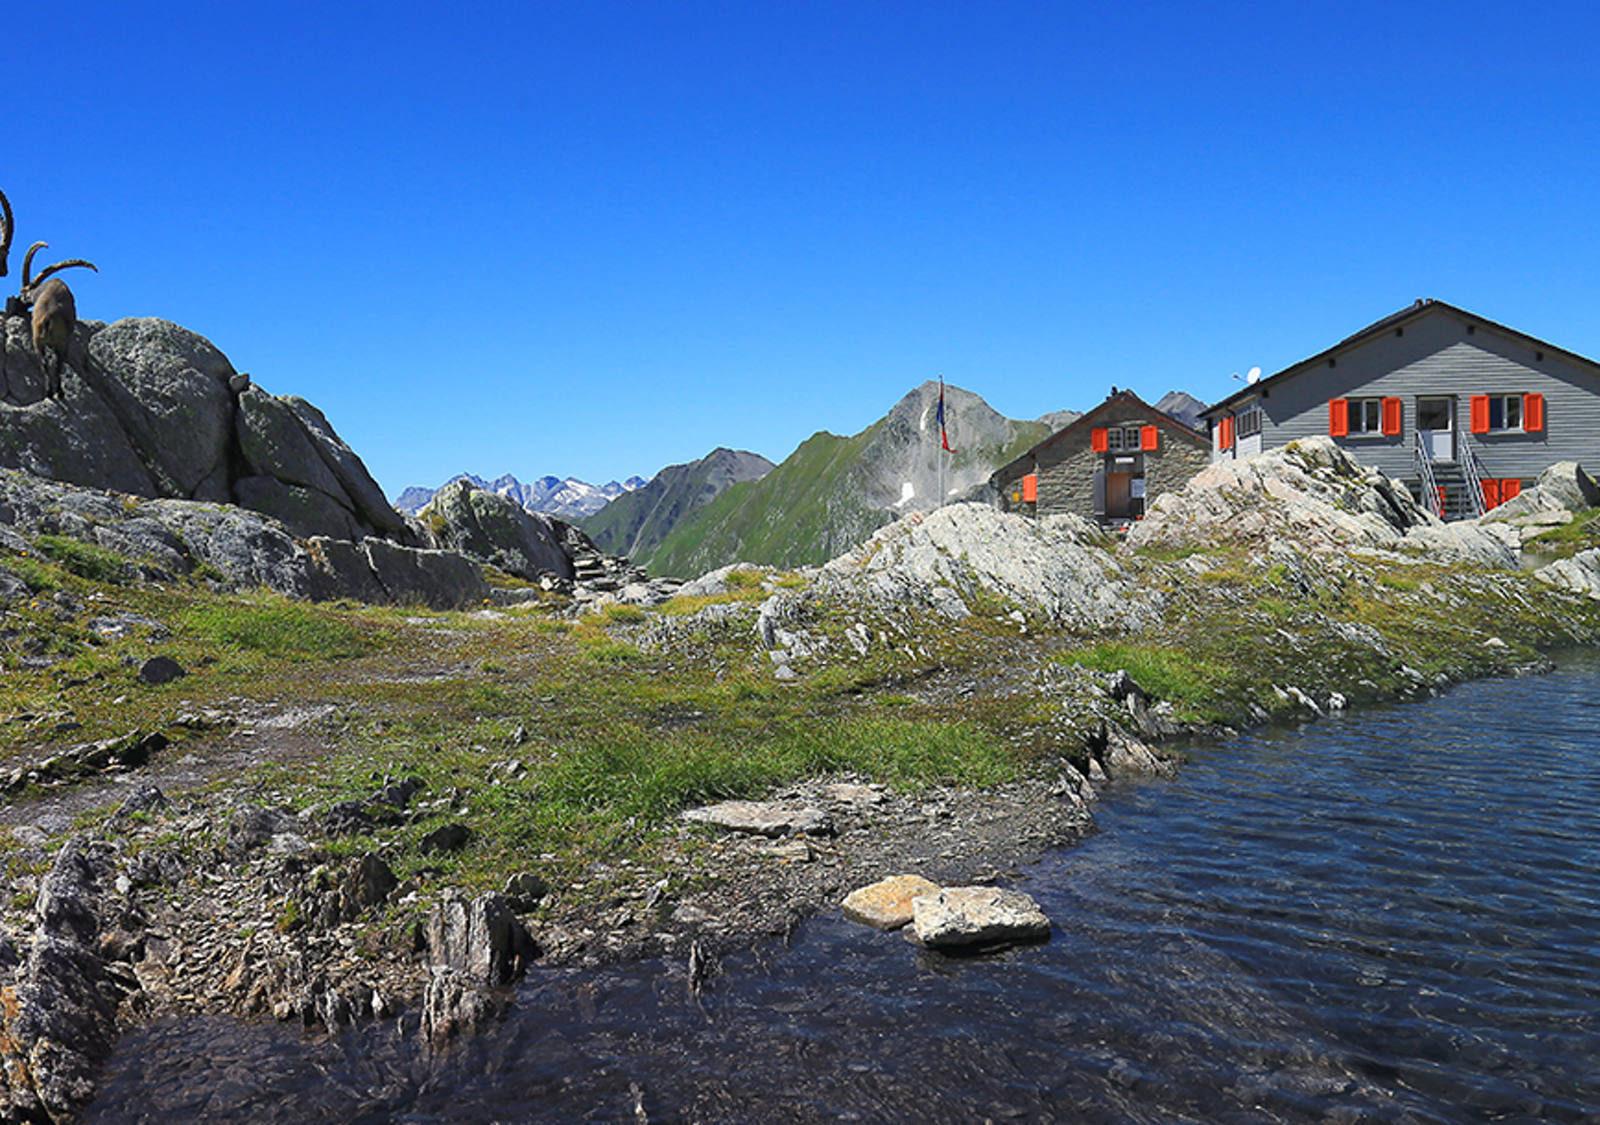 Bergsee Schweiz: Wandervorschlag zur Cadlimohütte